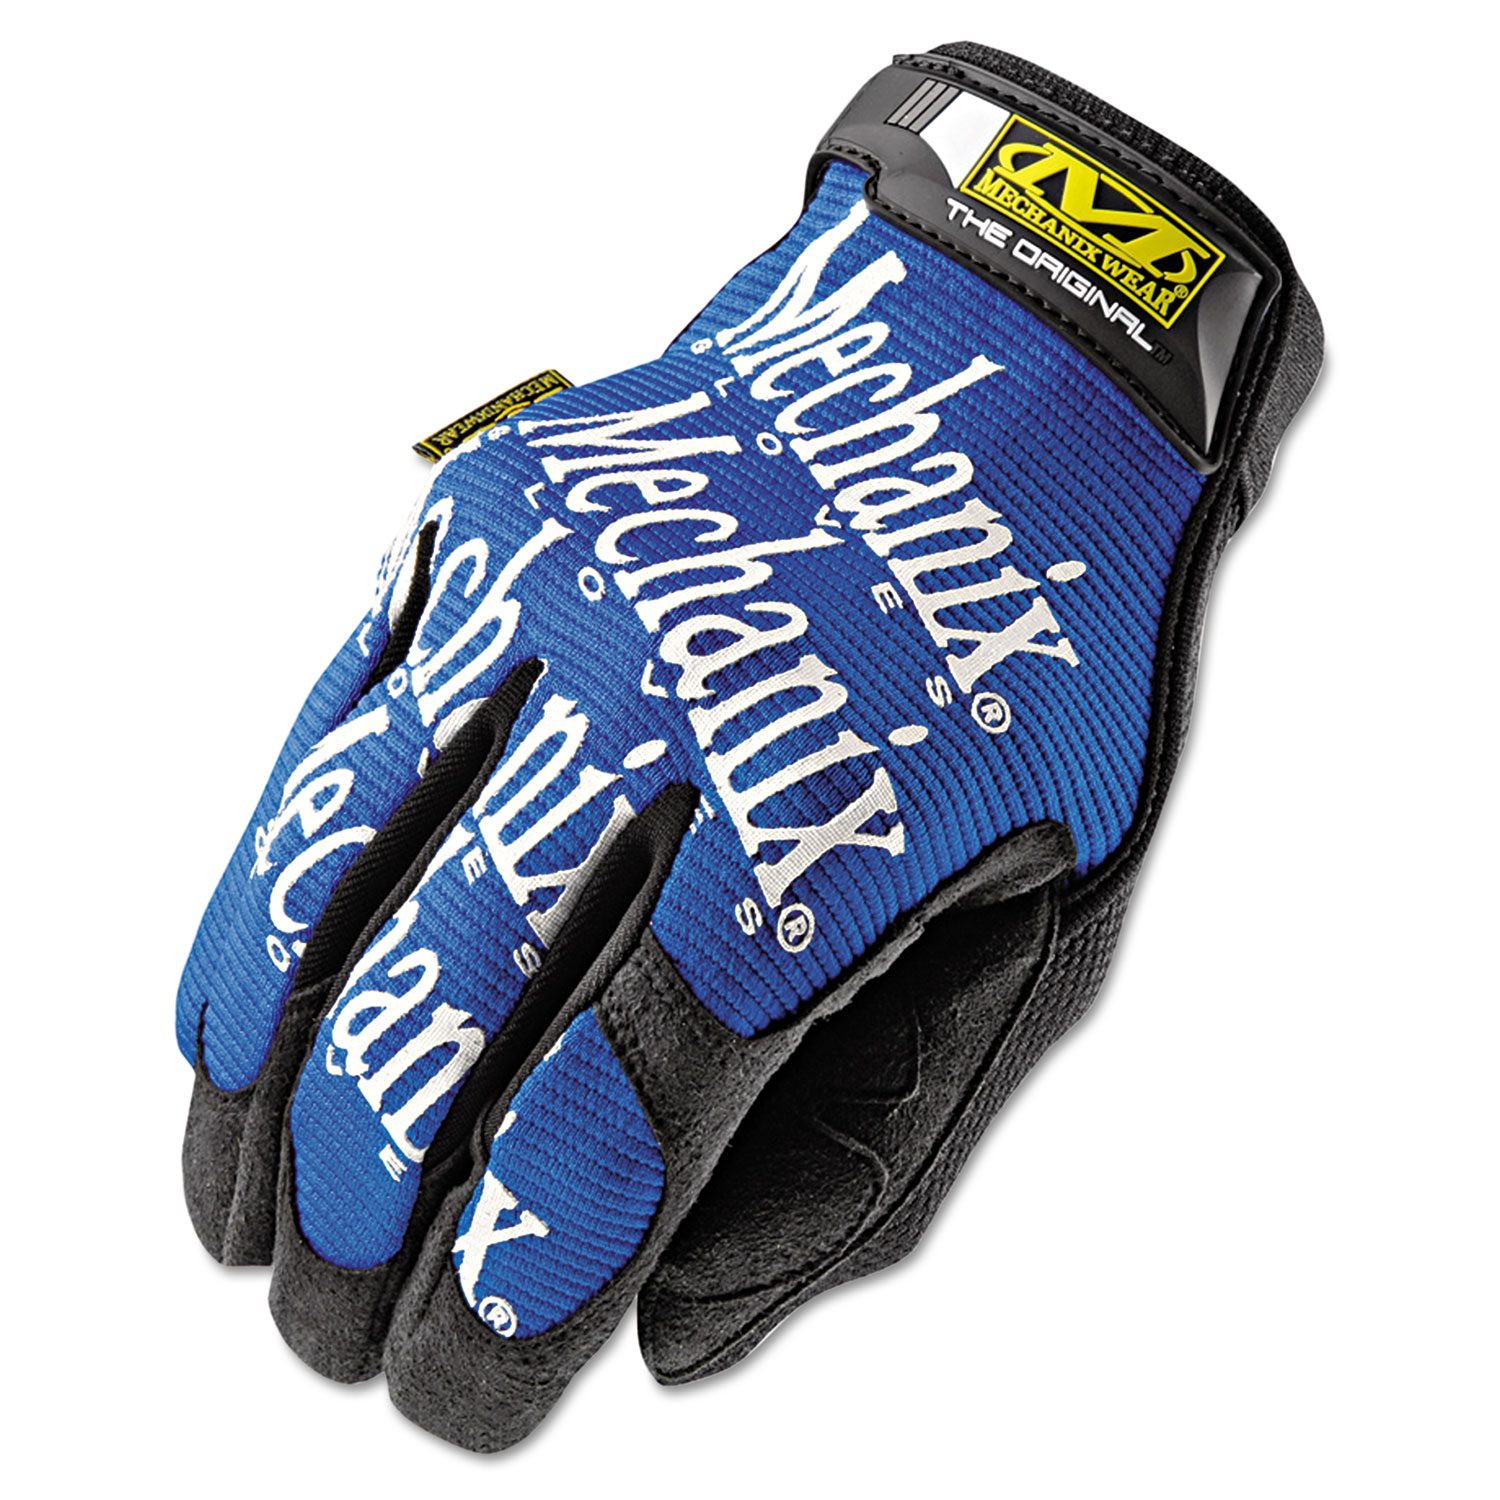 The Original Work Gloves, Blue/Black, Large